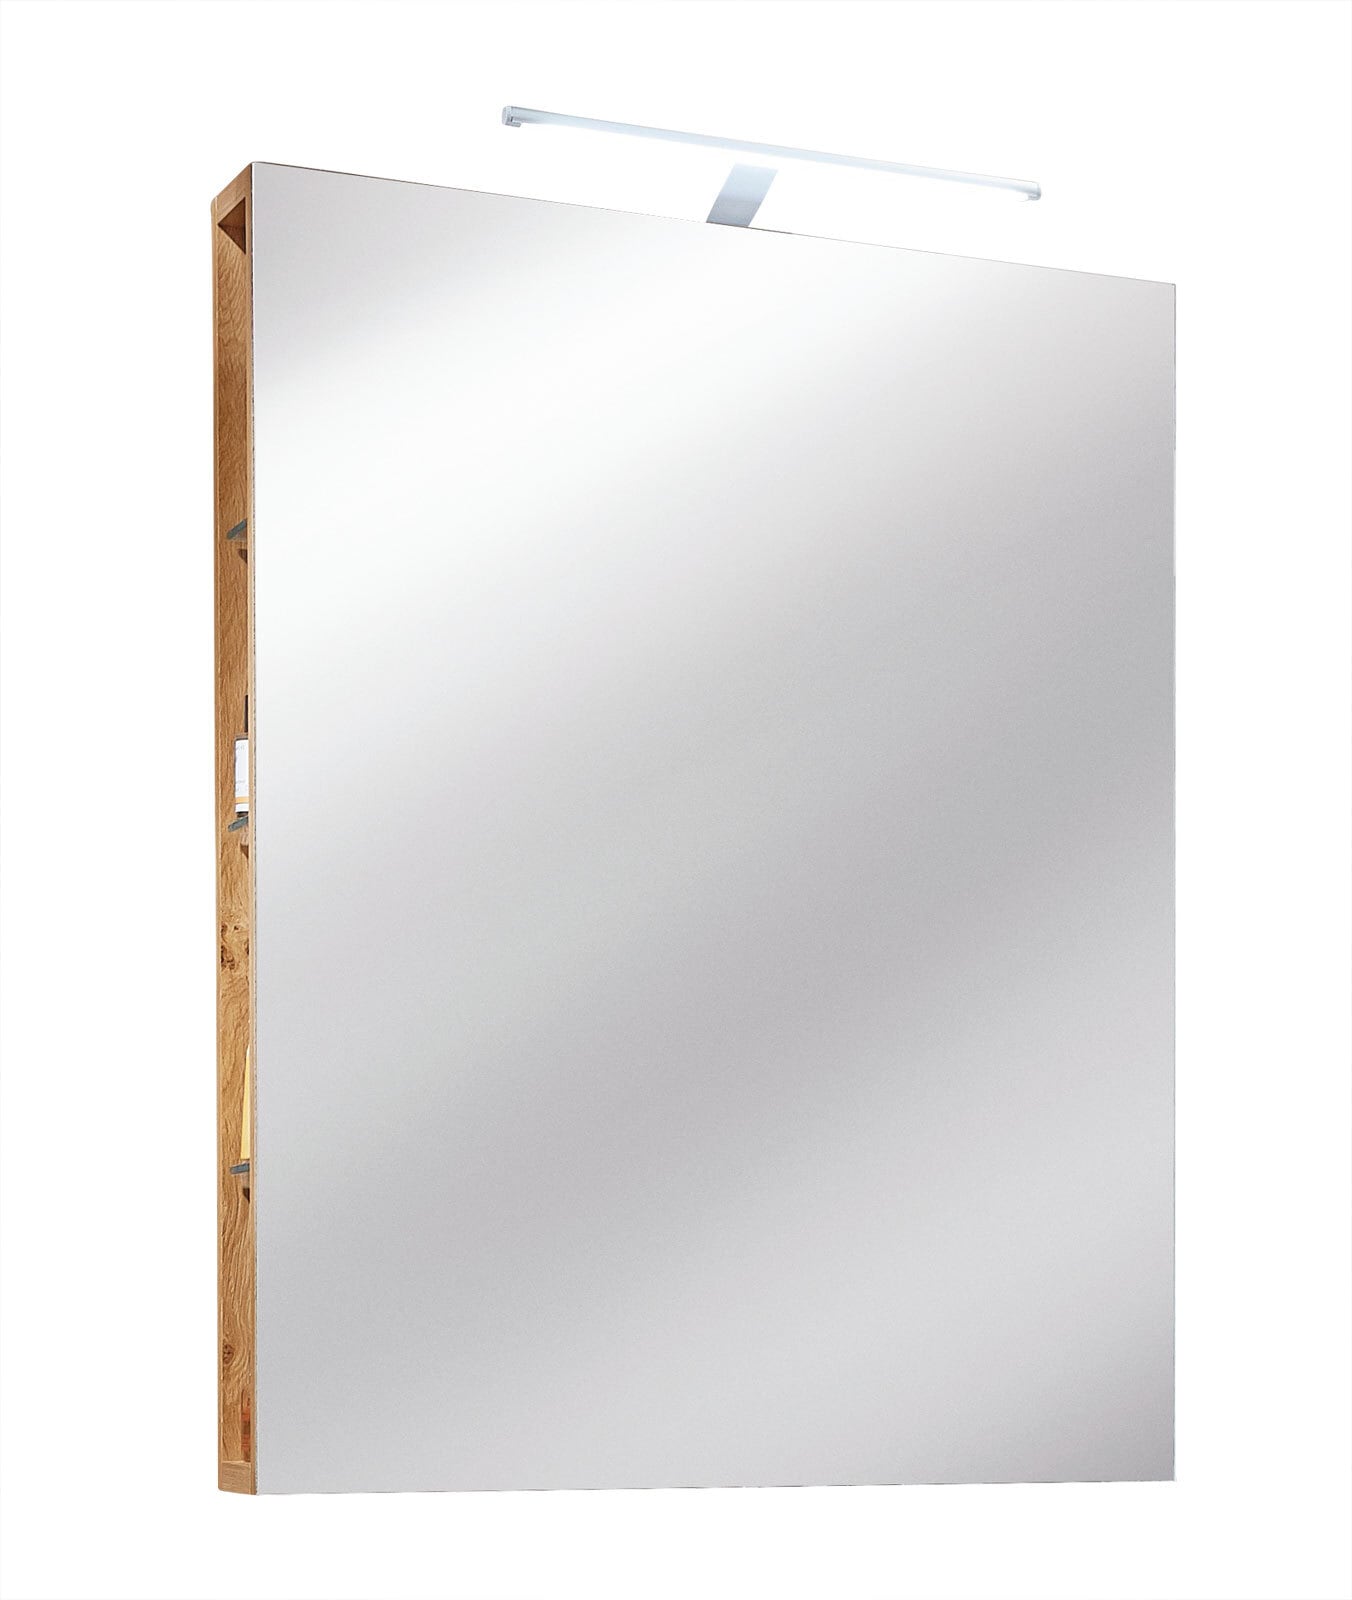 Spiegel mit Seitenregalen 52,4 x 84,8 cm braun